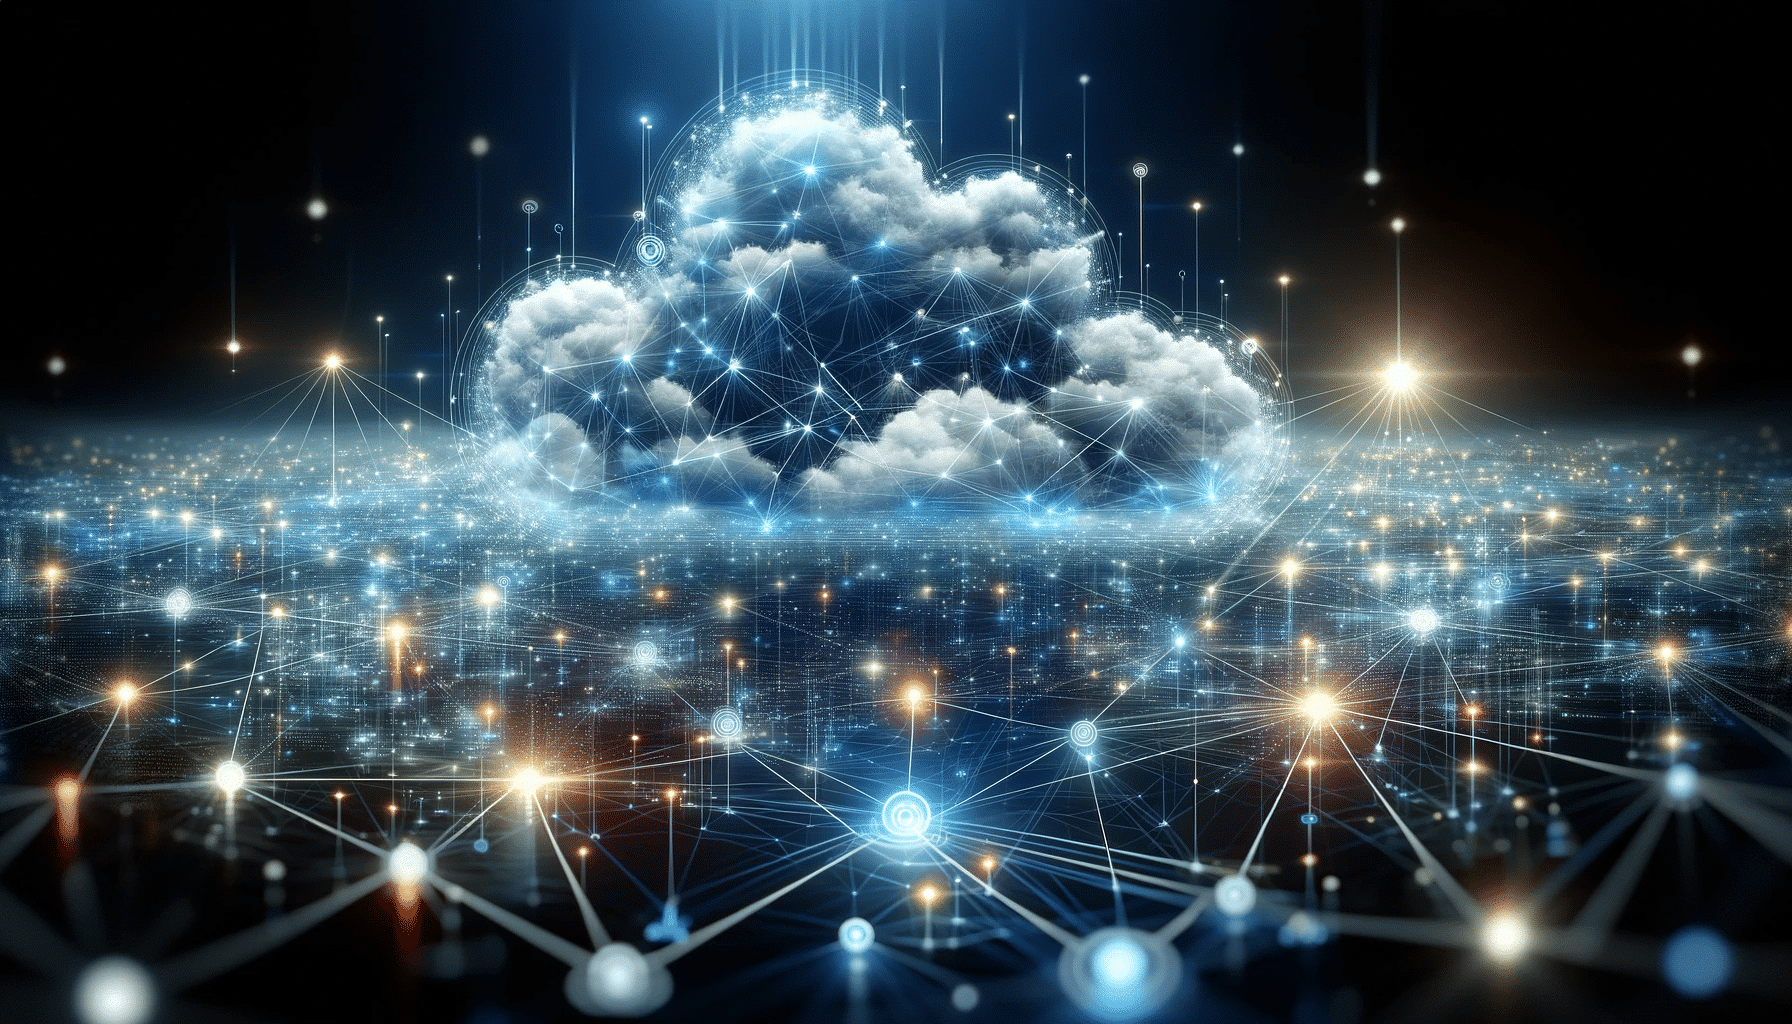 Abstract cloud computing representation